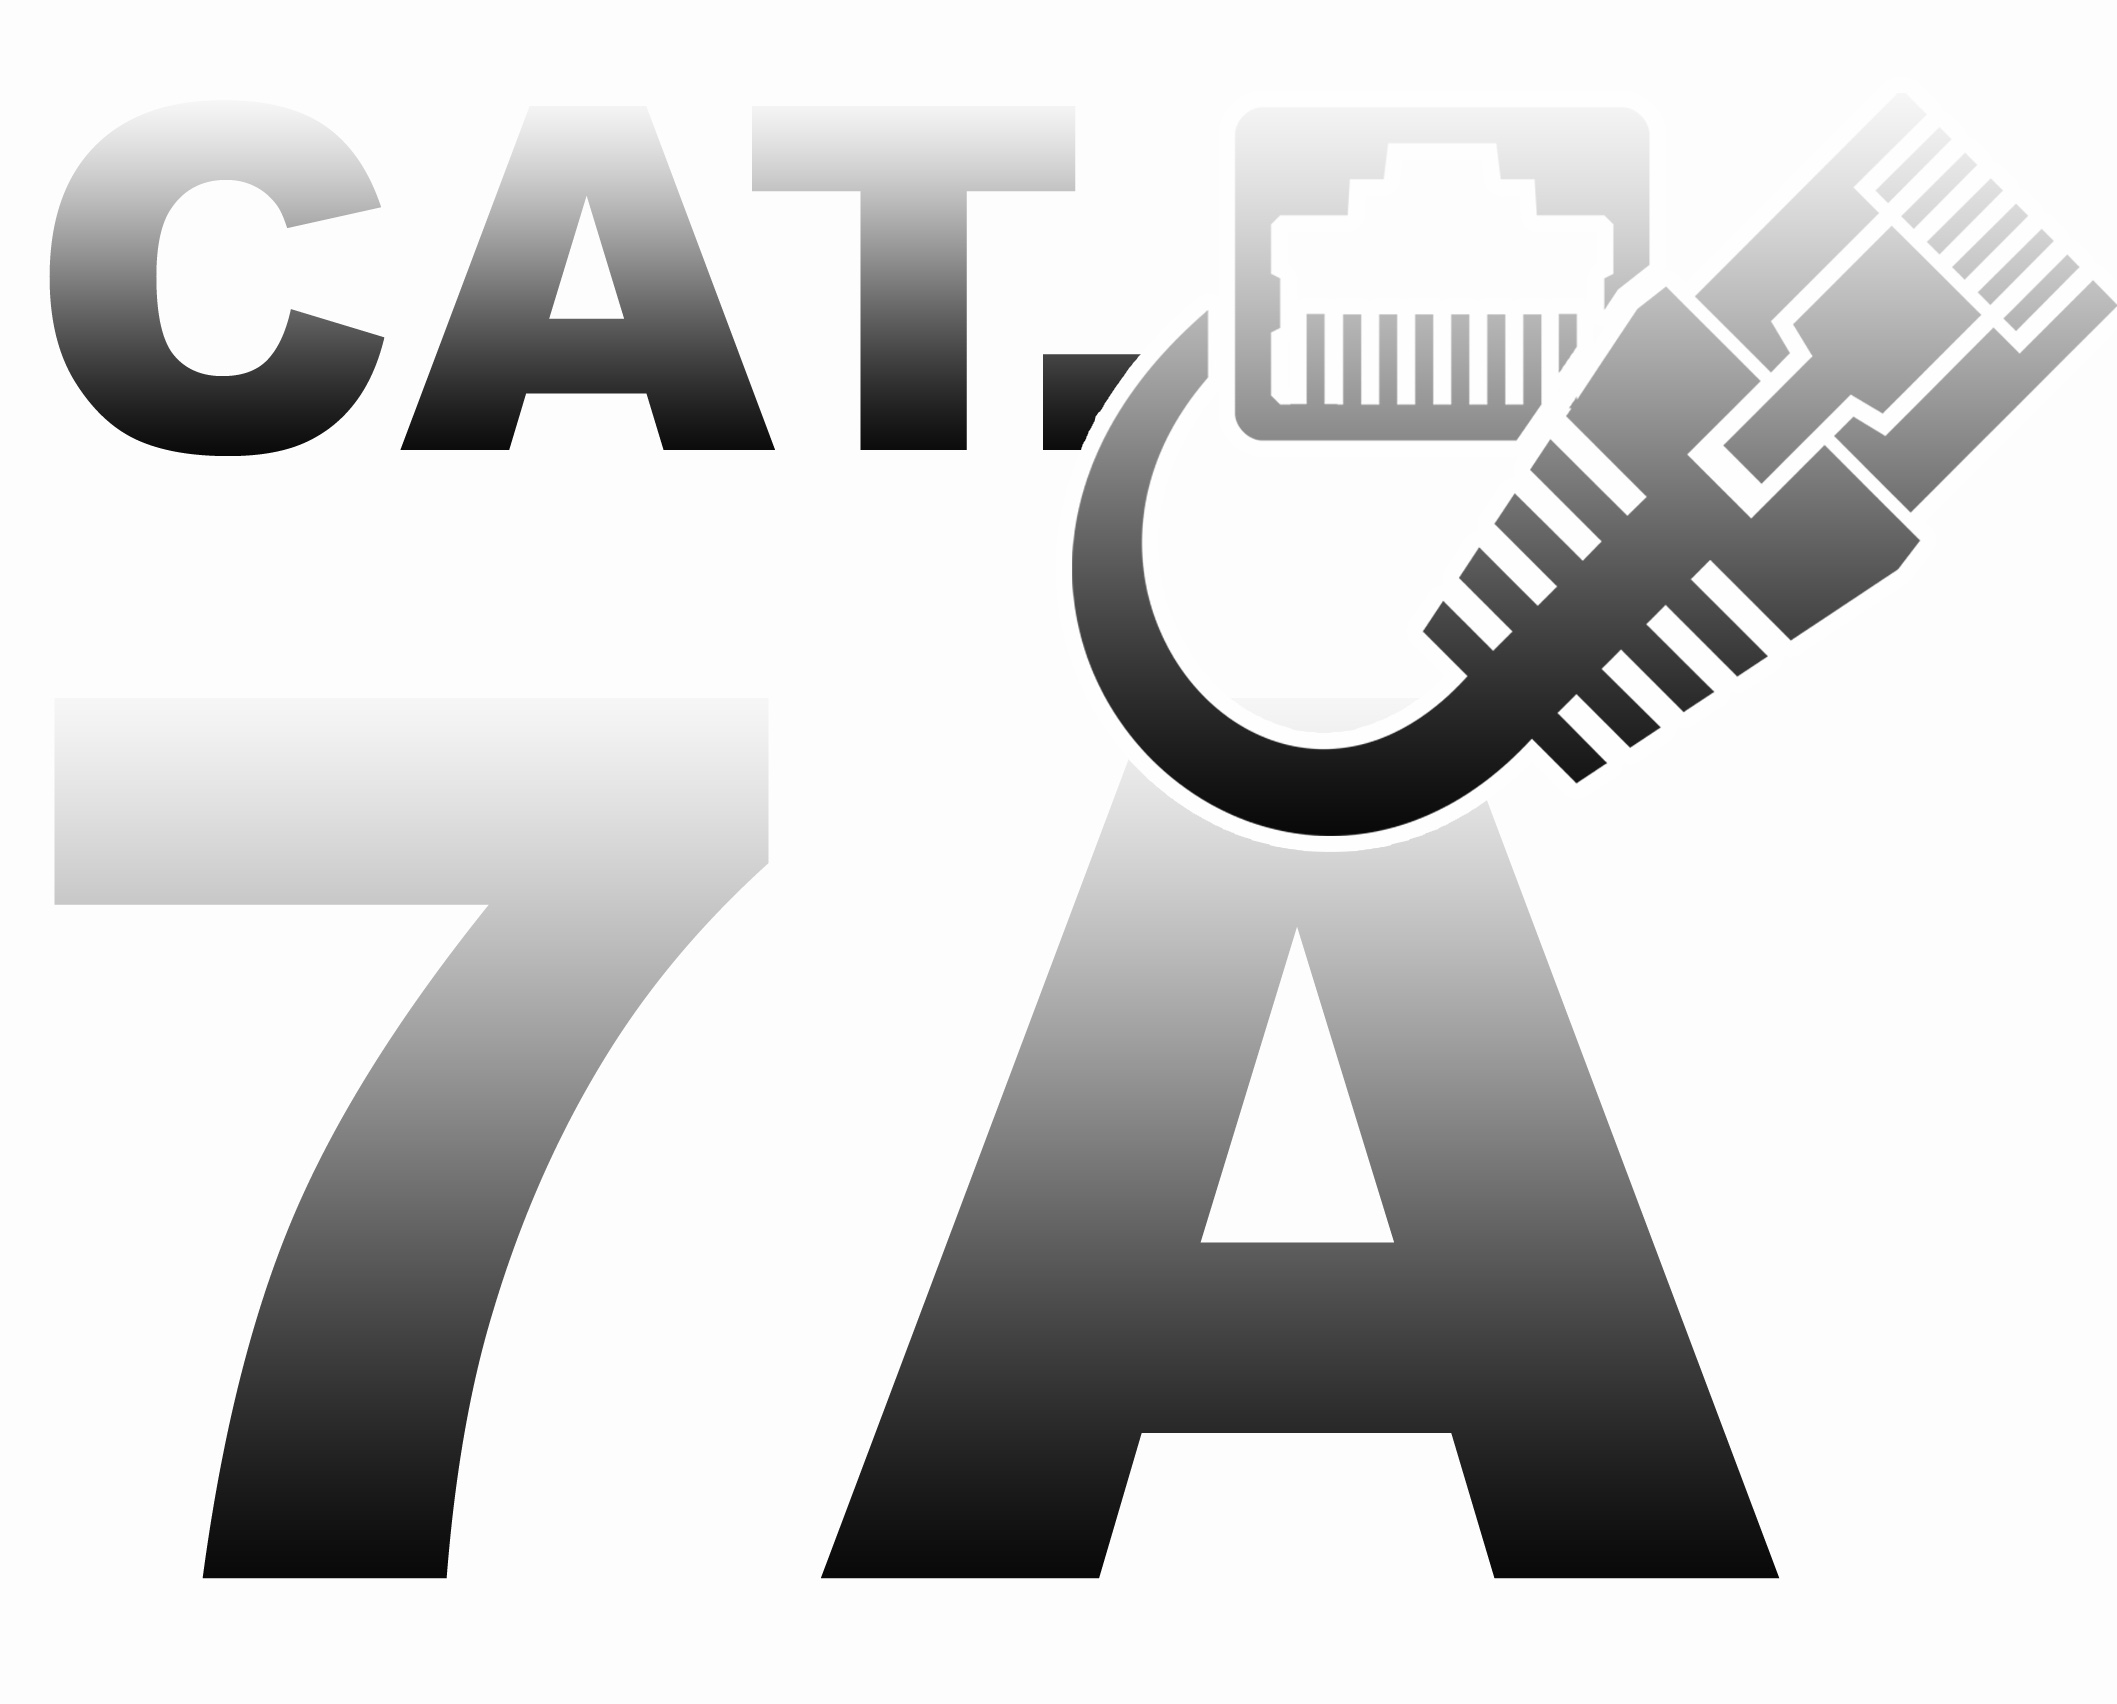 cat7a